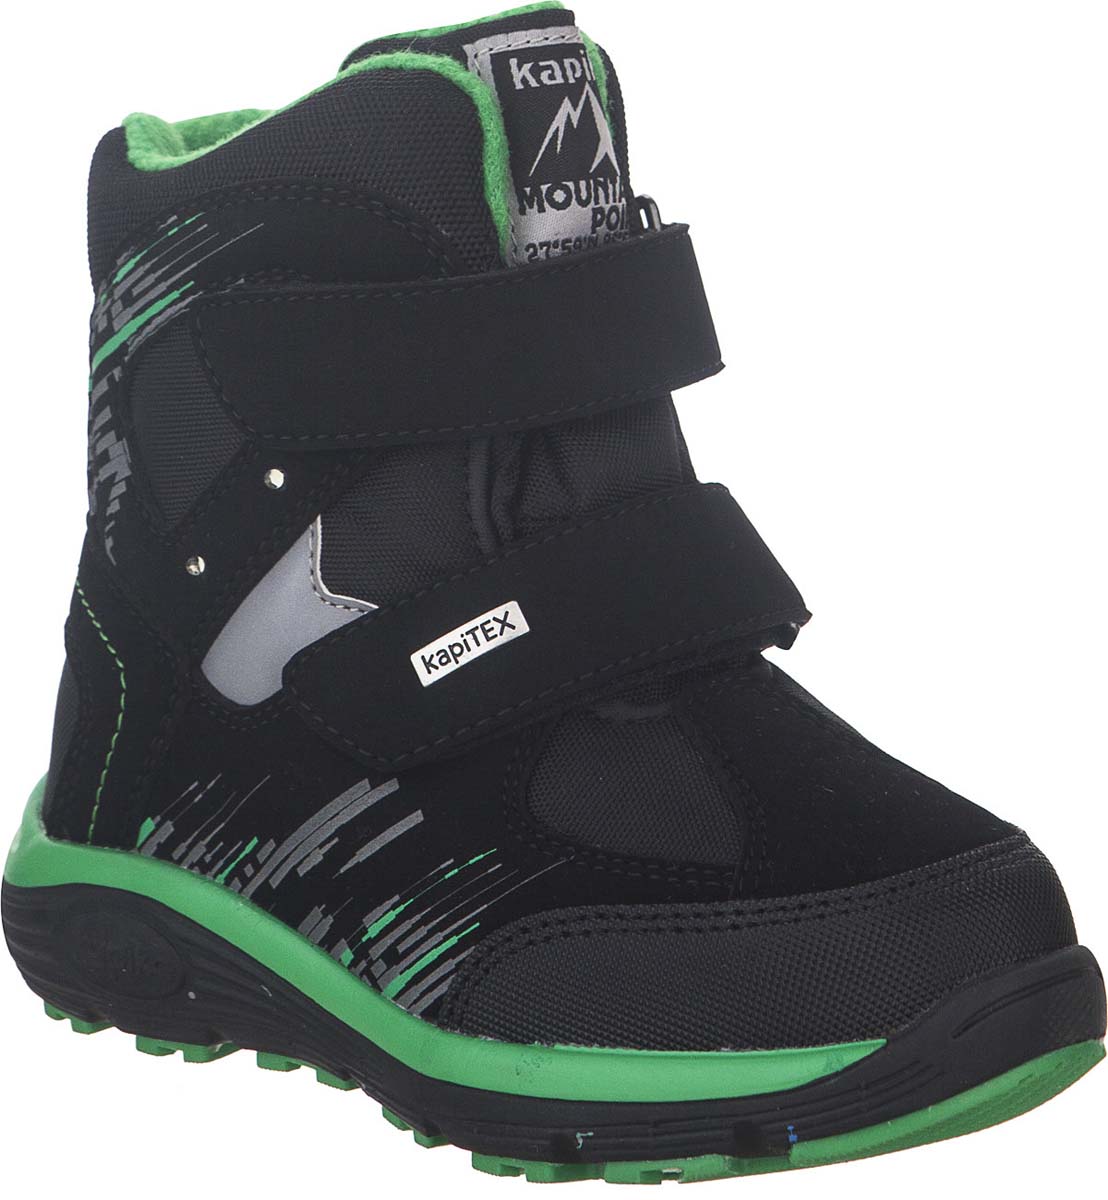 Ботинки для мальчика Kapika KapiTEX, цвет: черный, зеленый. 42234-2. Размер 31